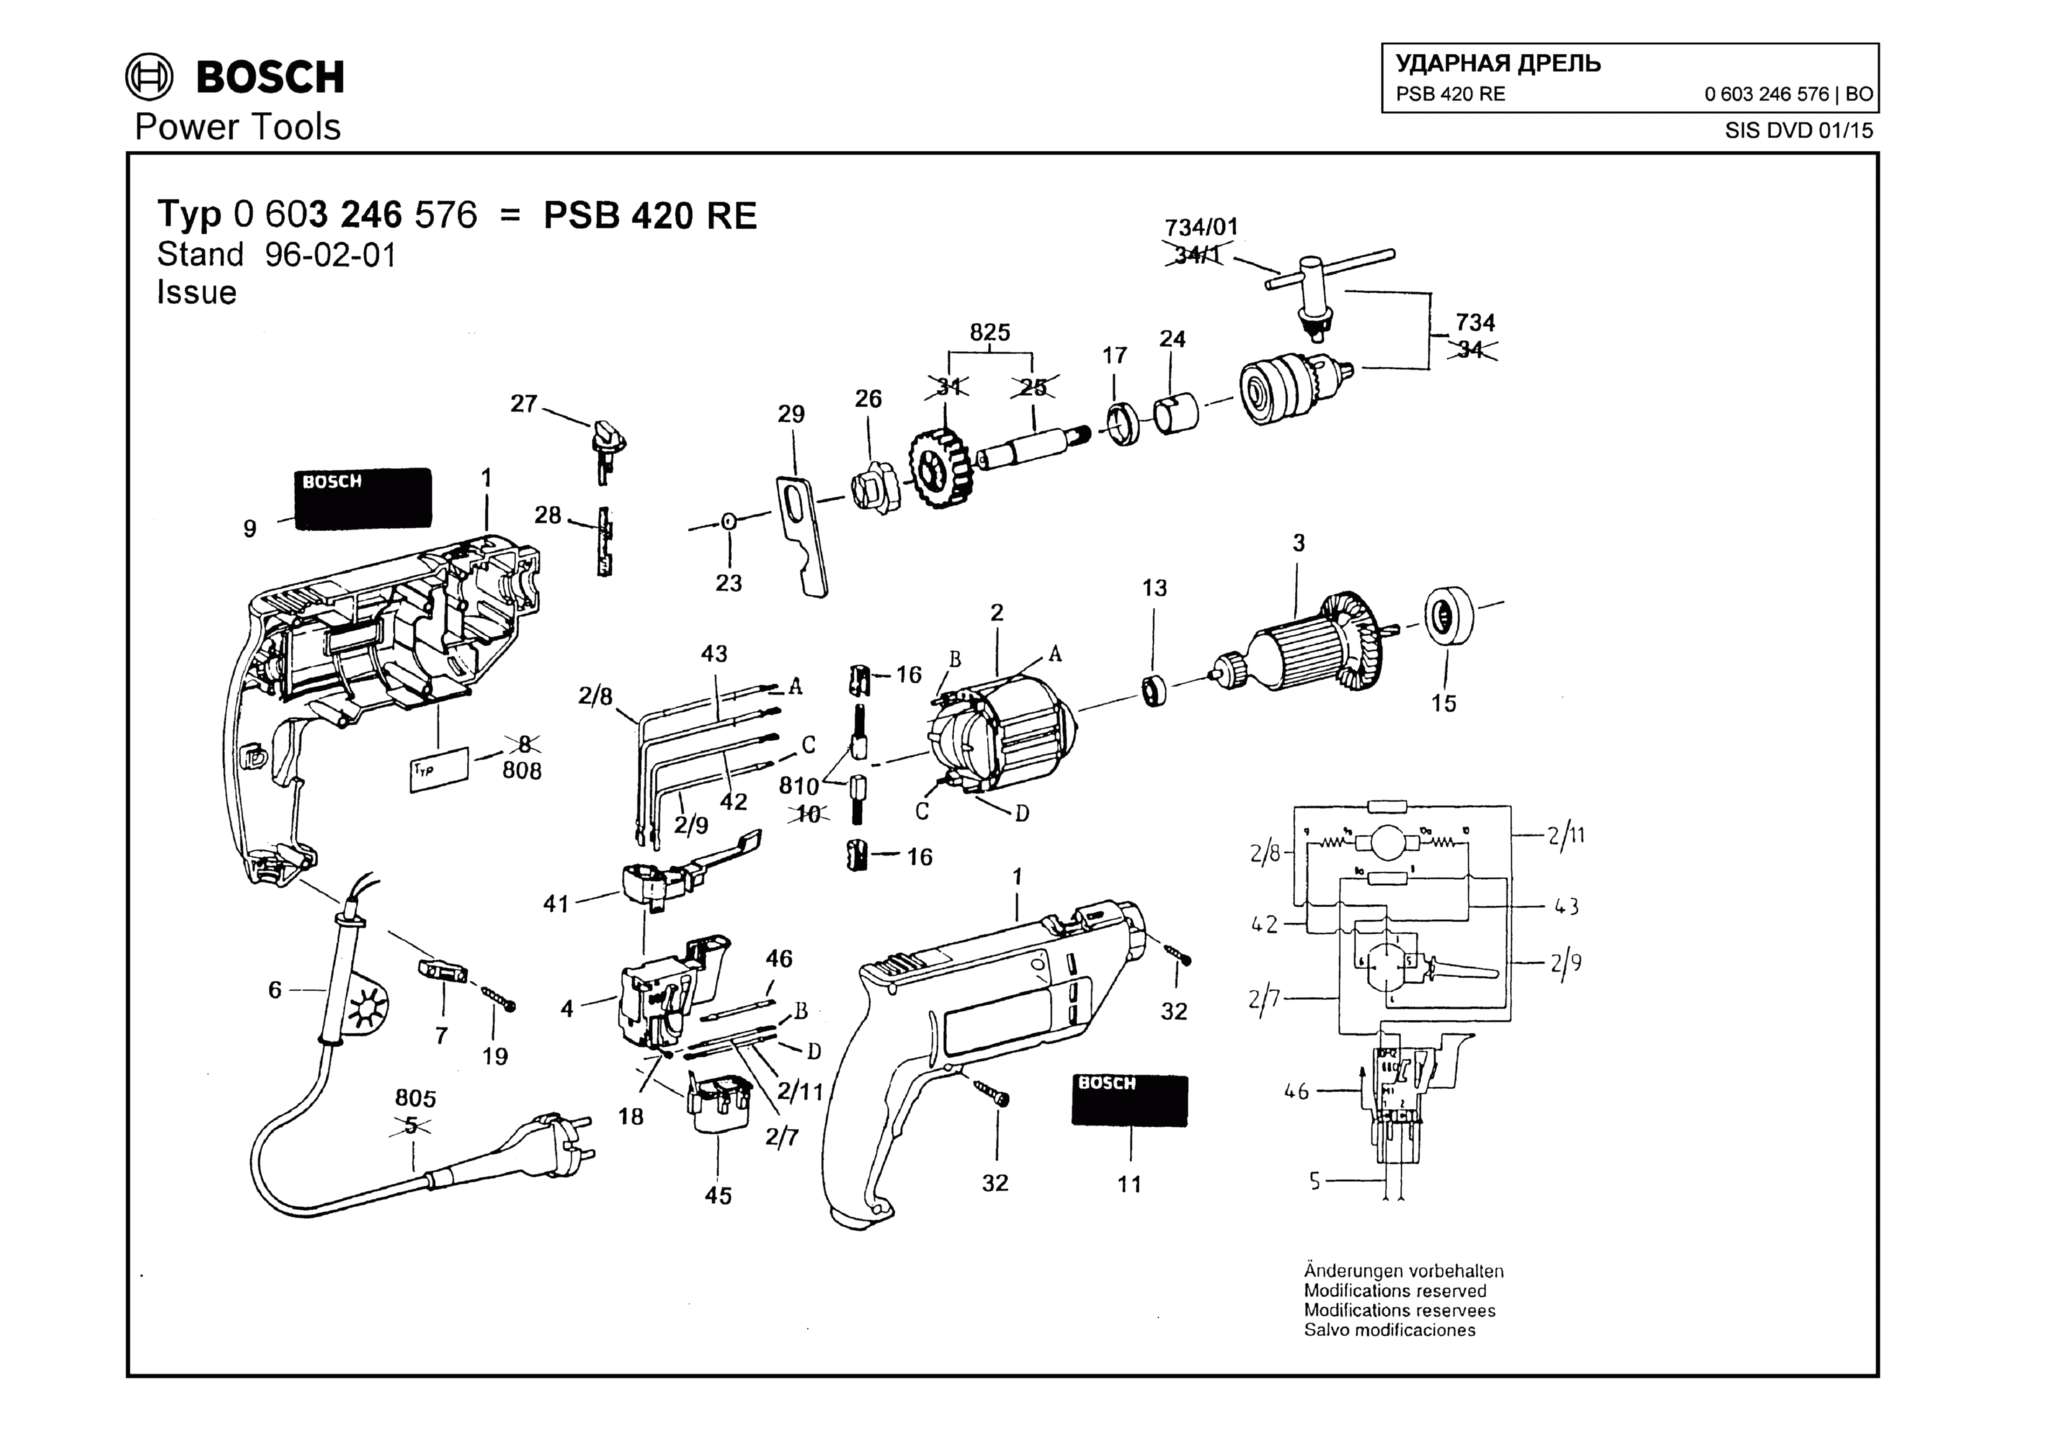 Запчасти, схема и деталировка Bosch PSB 420 RE (ТИП 0603246576)